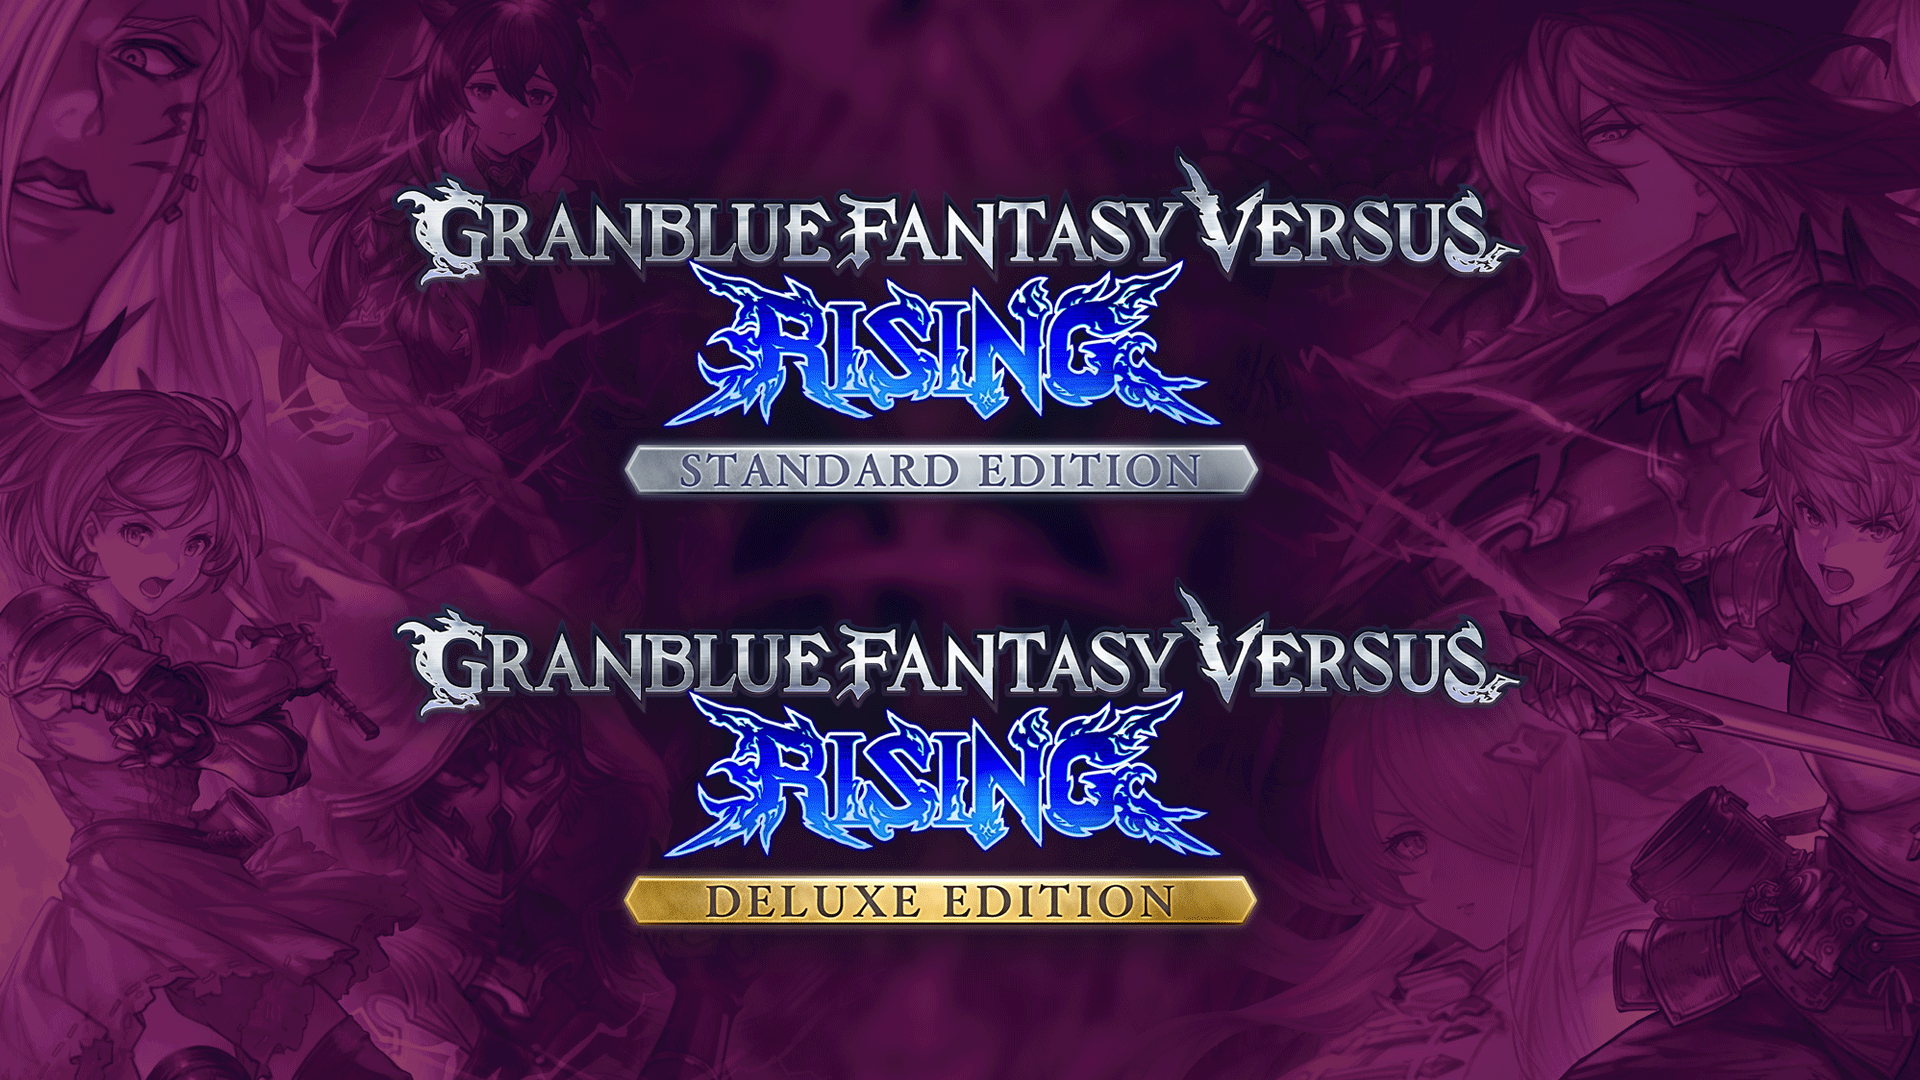 Granblue Fantasy Versus: Rising Video Review